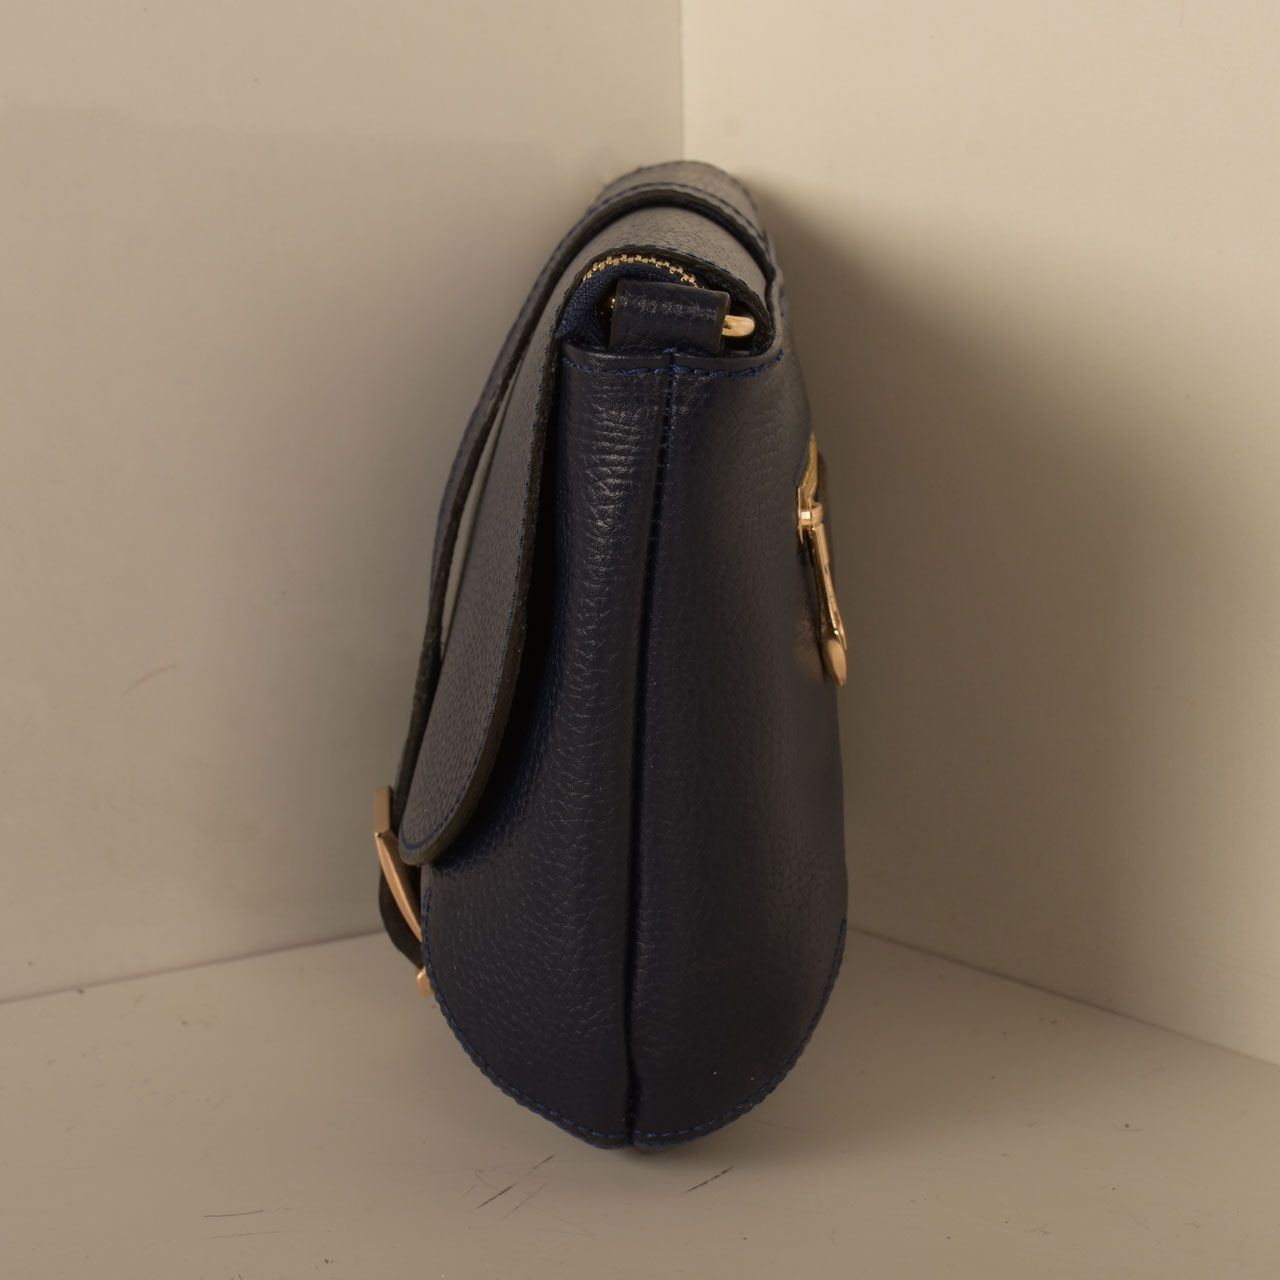  کیف دوشی زنانه پارینه چرم کد V189-12 -  - 46